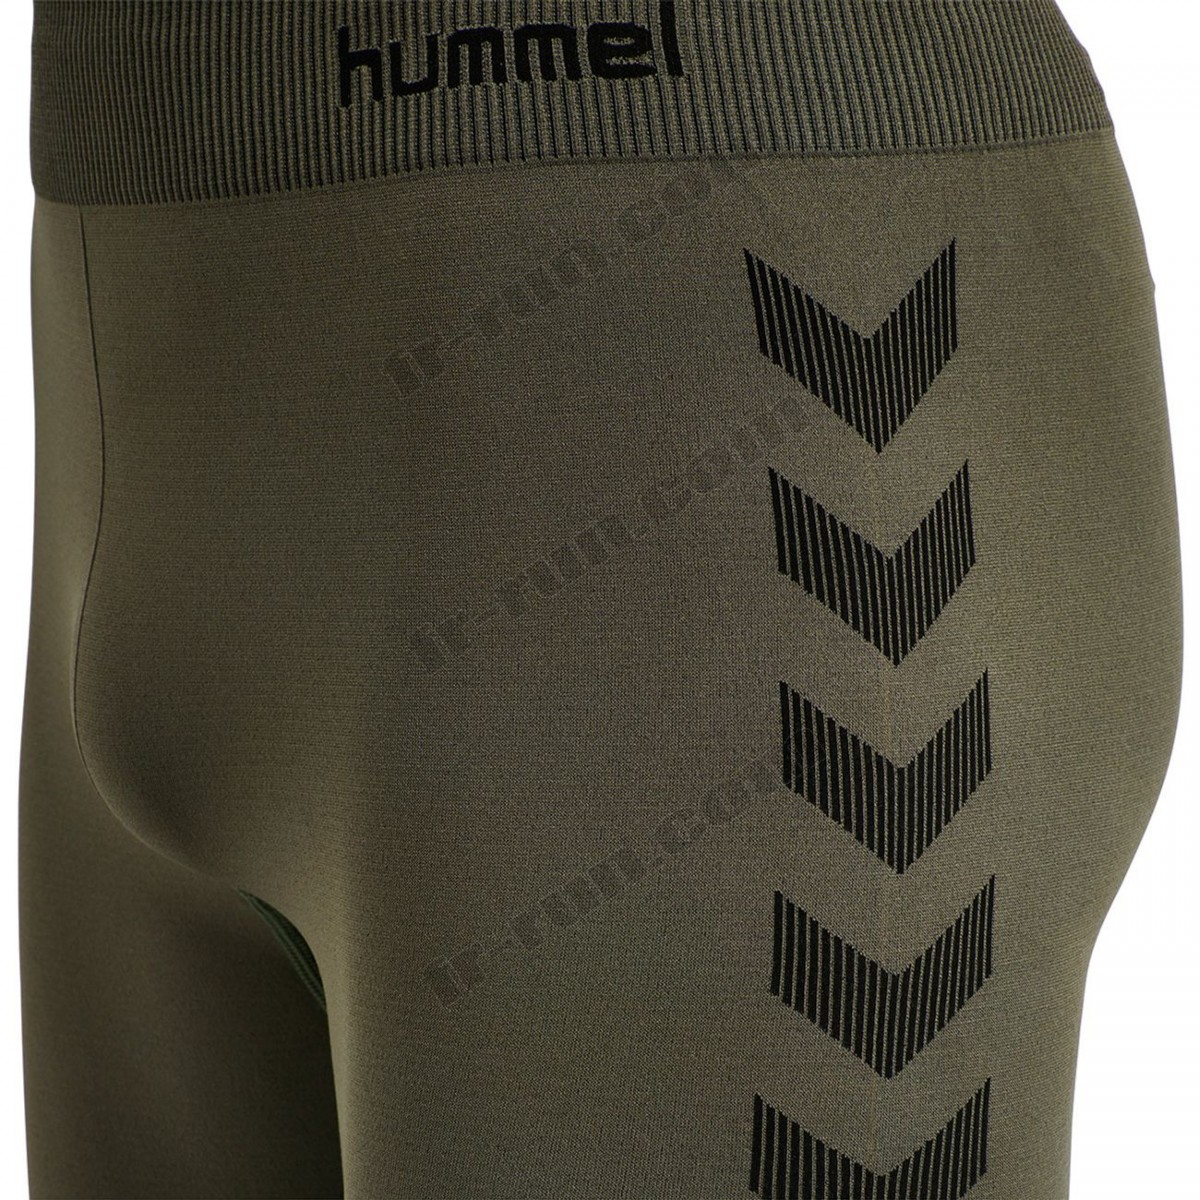 Hummel/Fitness homme HUMMEL Short de compression Hummel hmlfirst training √ Nouveau style √ Soldes - -7